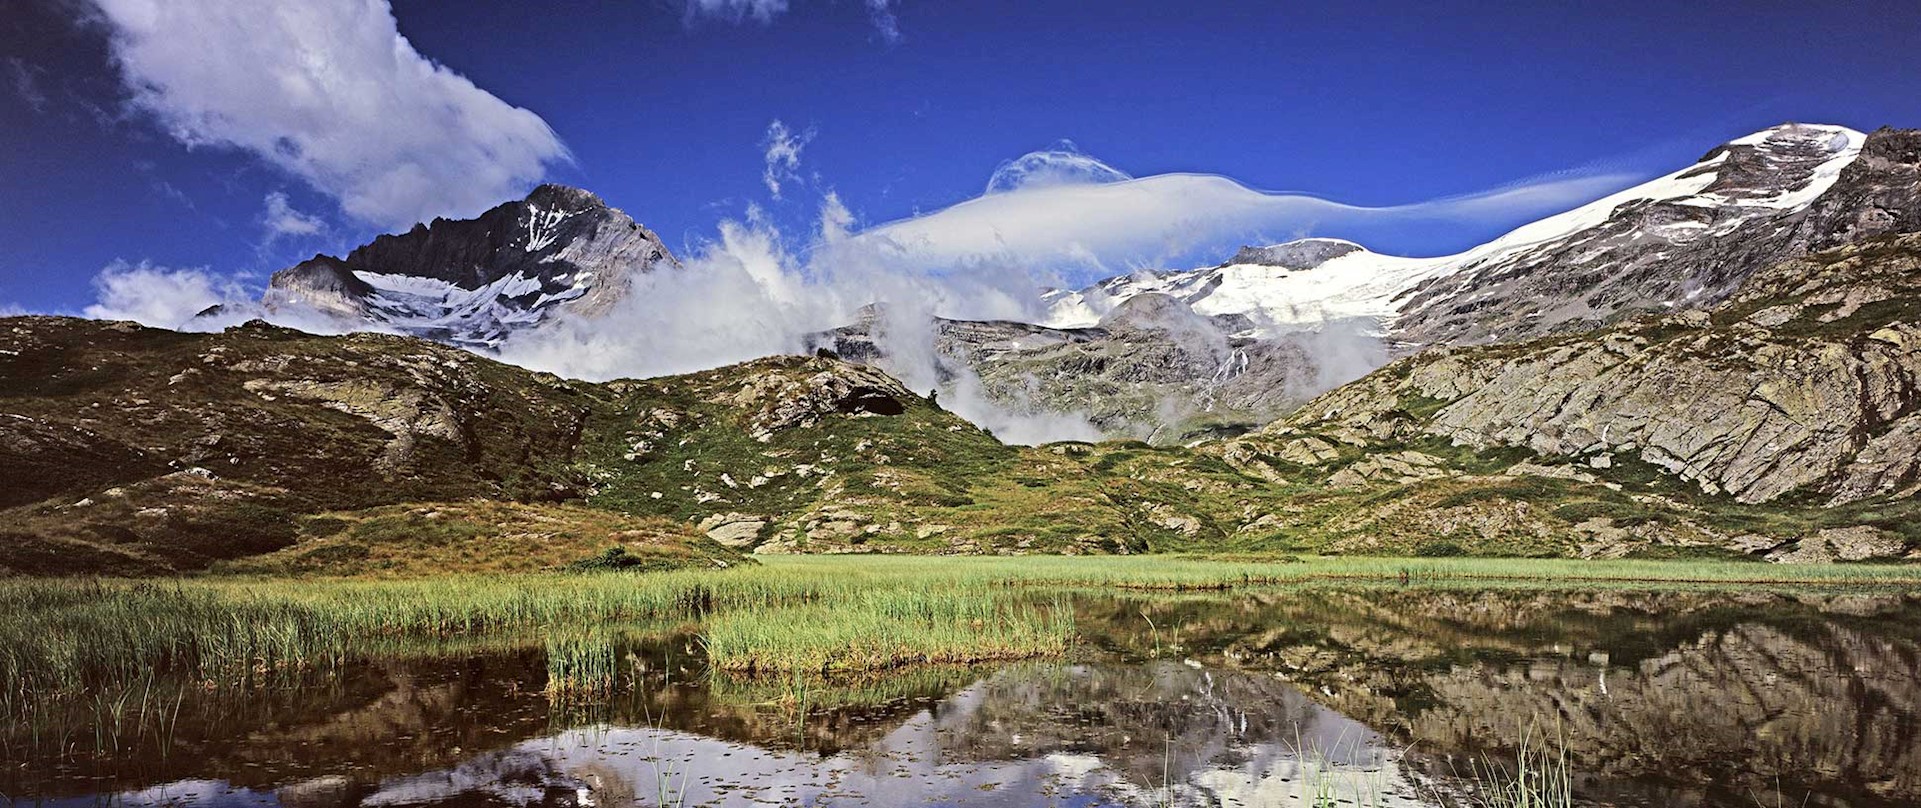 Vallée de la Maurienne, la Dent Parrachée (3697m) et le glacier de l'Arpont vus du lac du Lait (2 350m) en été.  Patrick DESGRAUPES / HEMIS